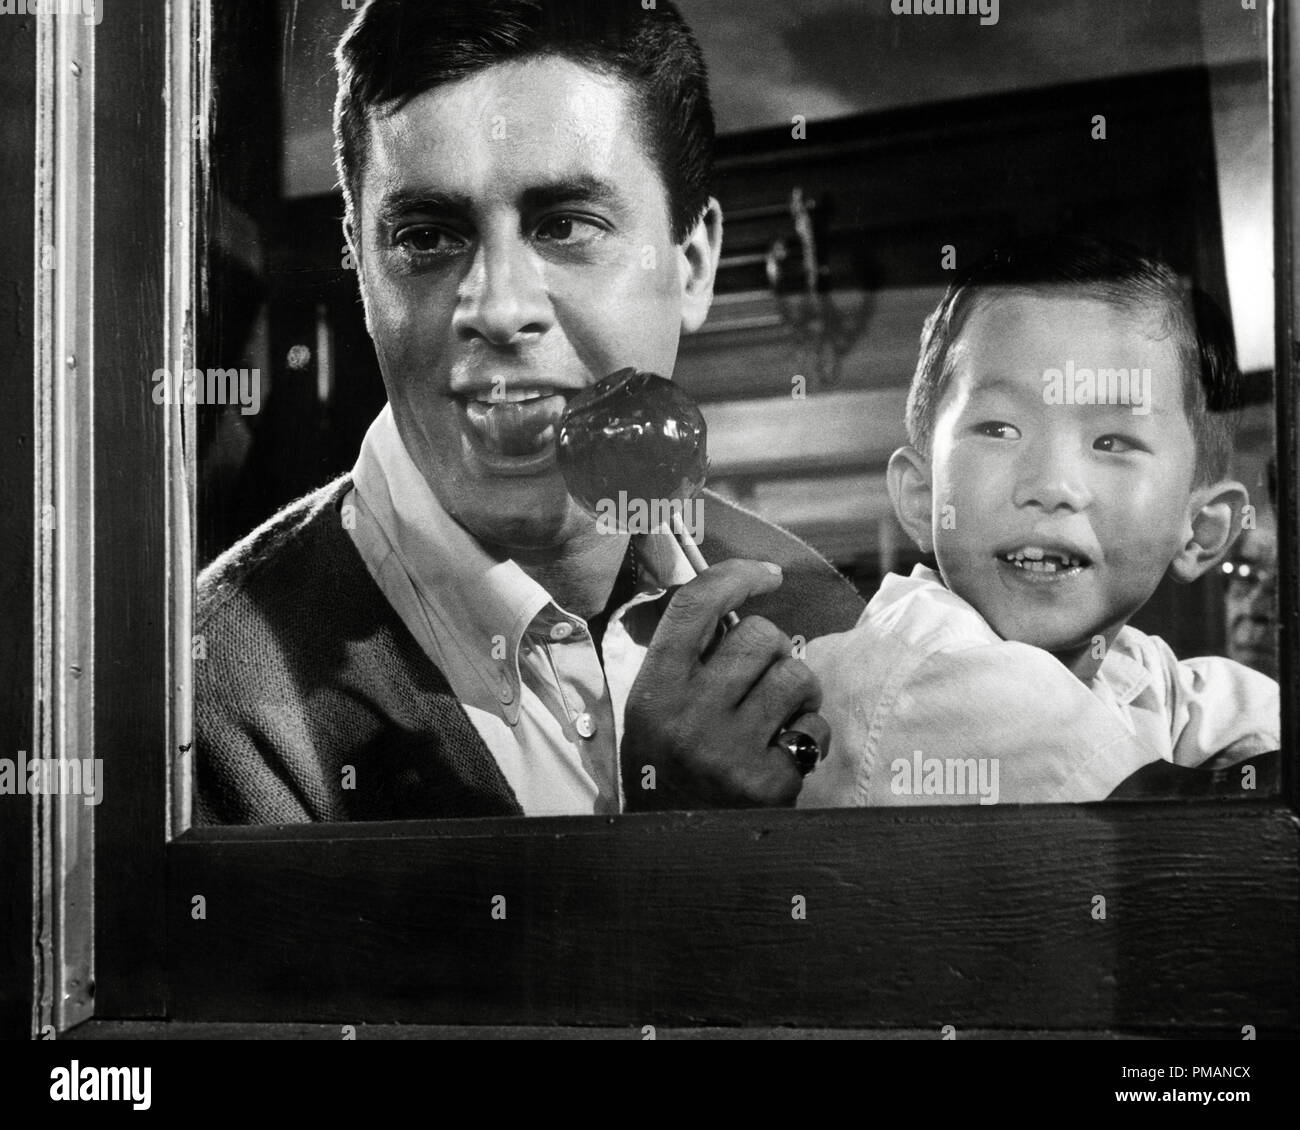 Film Still / Werbung immer noch von "Geisha Boy' von Jerry Lewis 1958 Paramount Kino Verlage Sammlung - Keine Freigabe - Nur für redaktionelle Verwendung Datei Referenz # 33505 525 THA Stockfoto